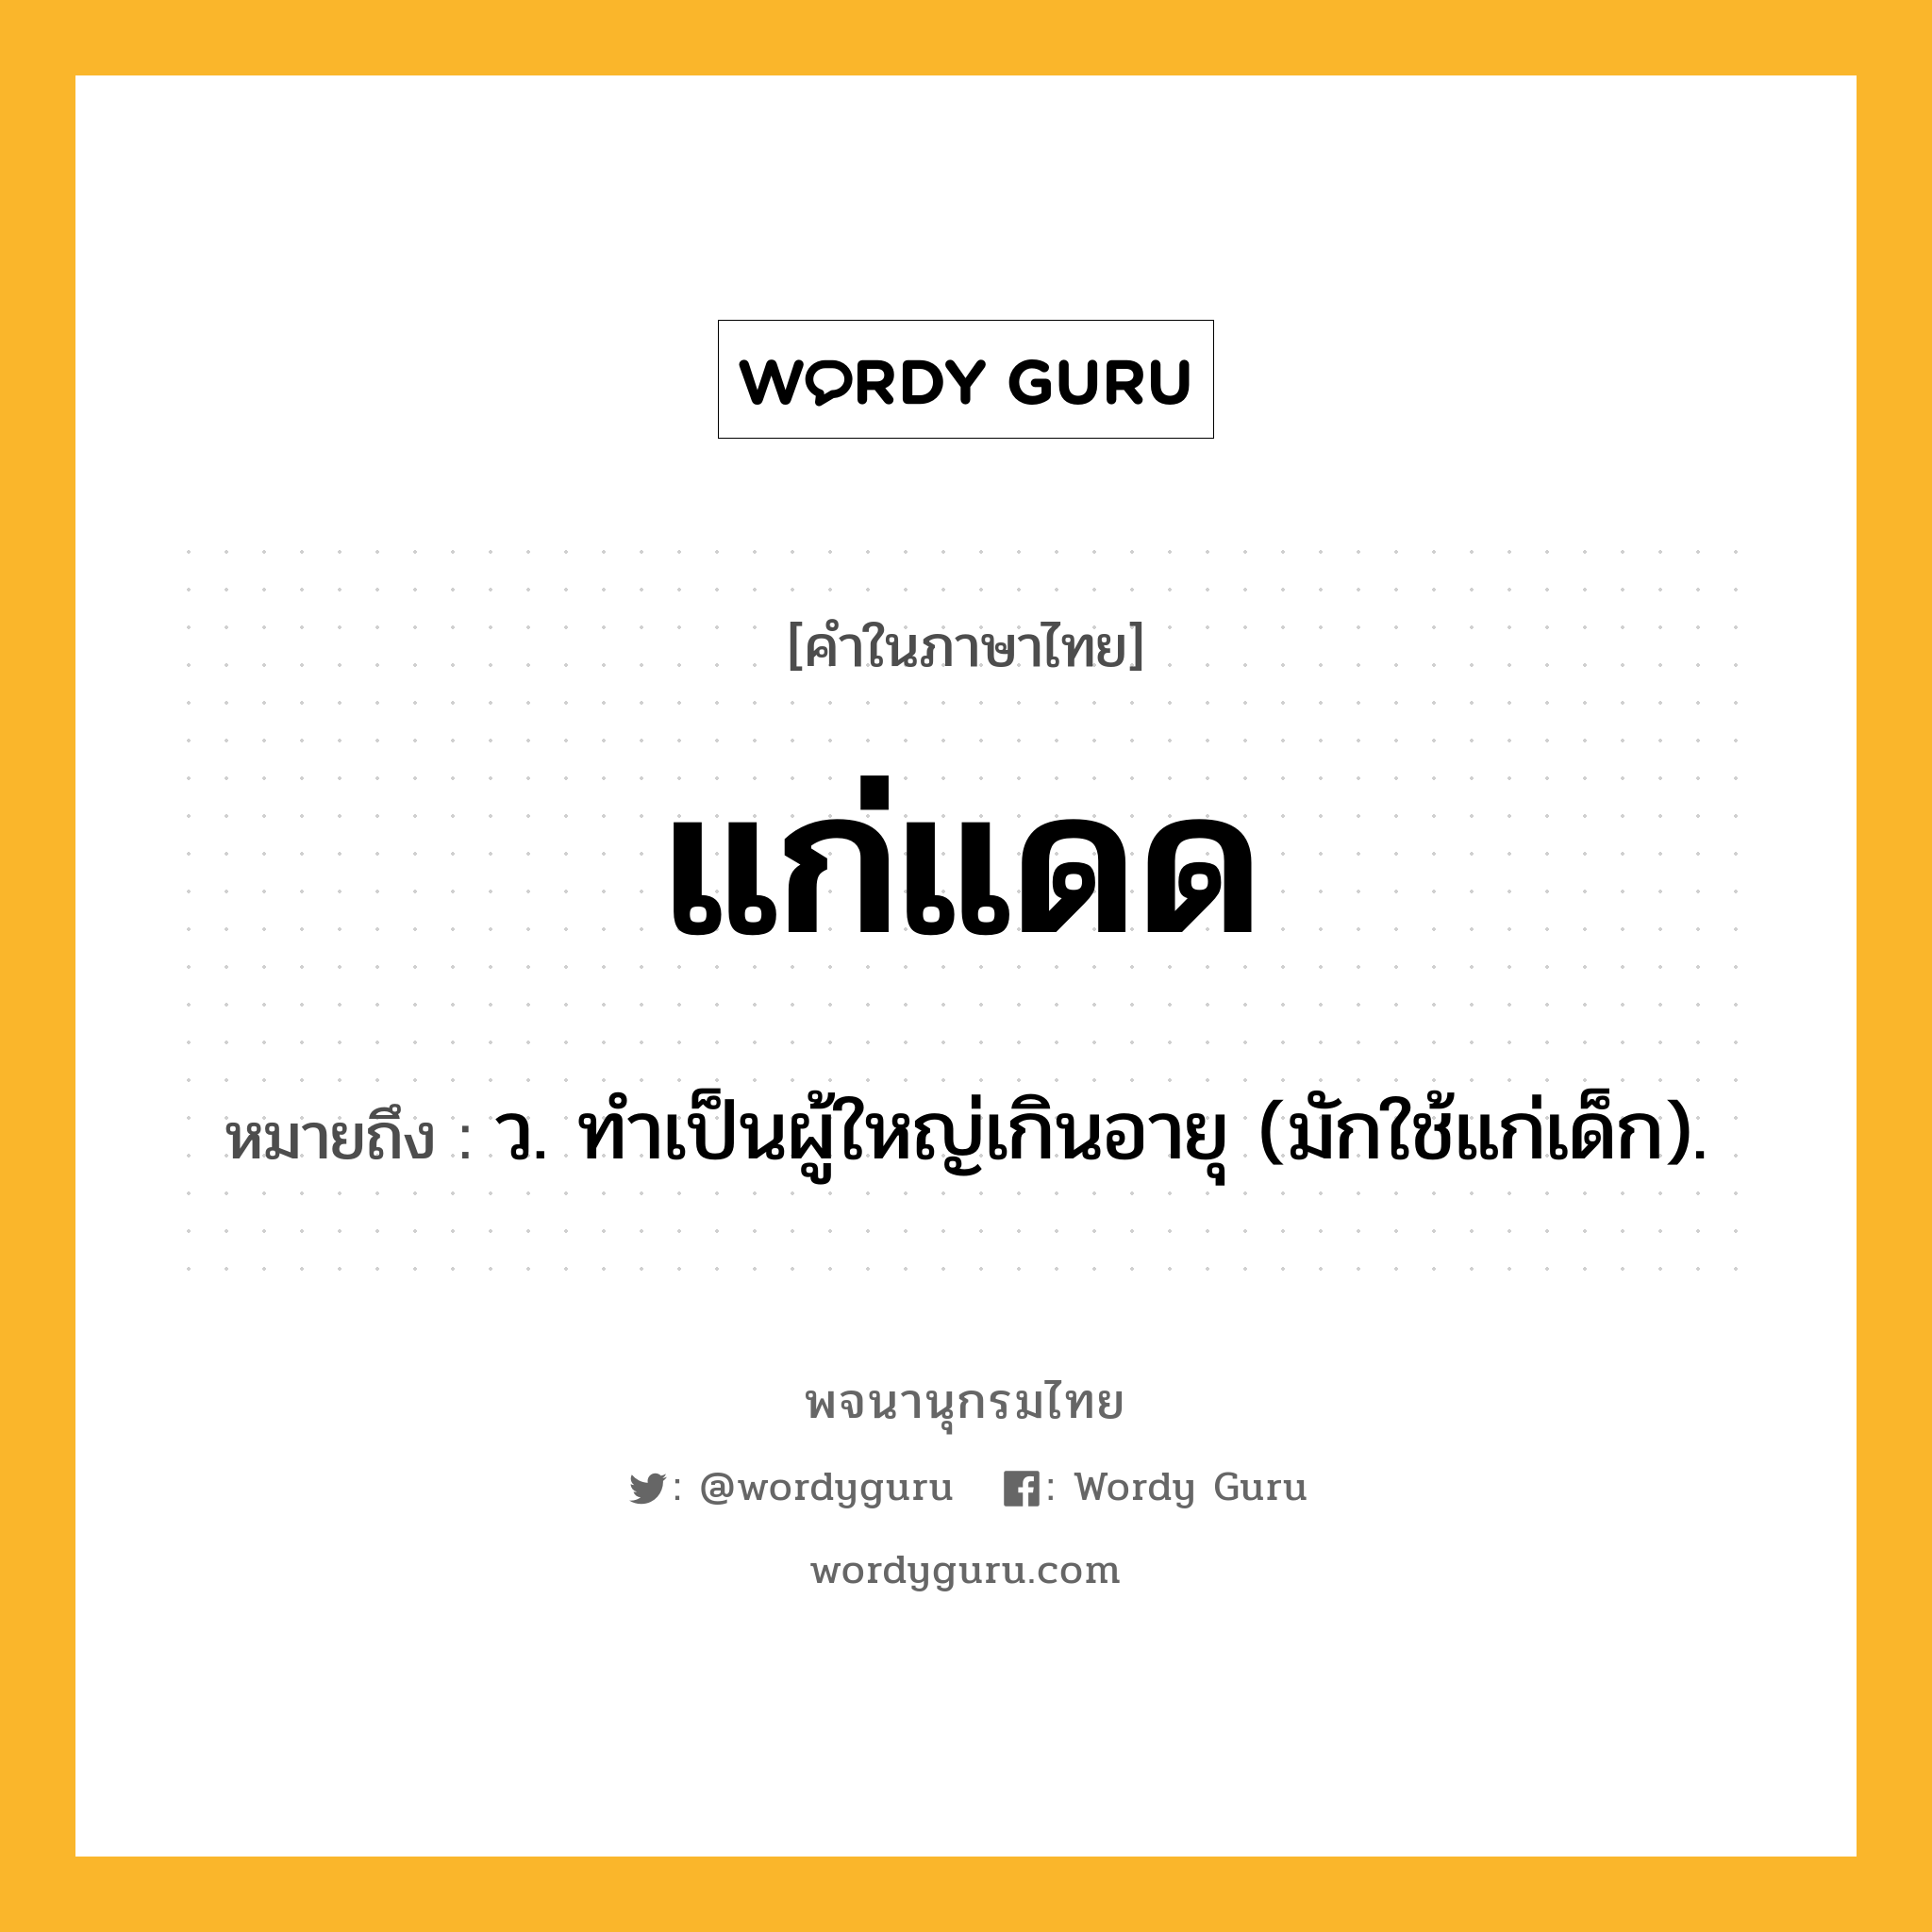 แก่แดด หมายถึงอะไร?, คำในภาษาไทย แก่แดด หมายถึง ว. ทําเป็นผู้ใหญ่เกินอายุ (มักใช้แก่เด็ก).